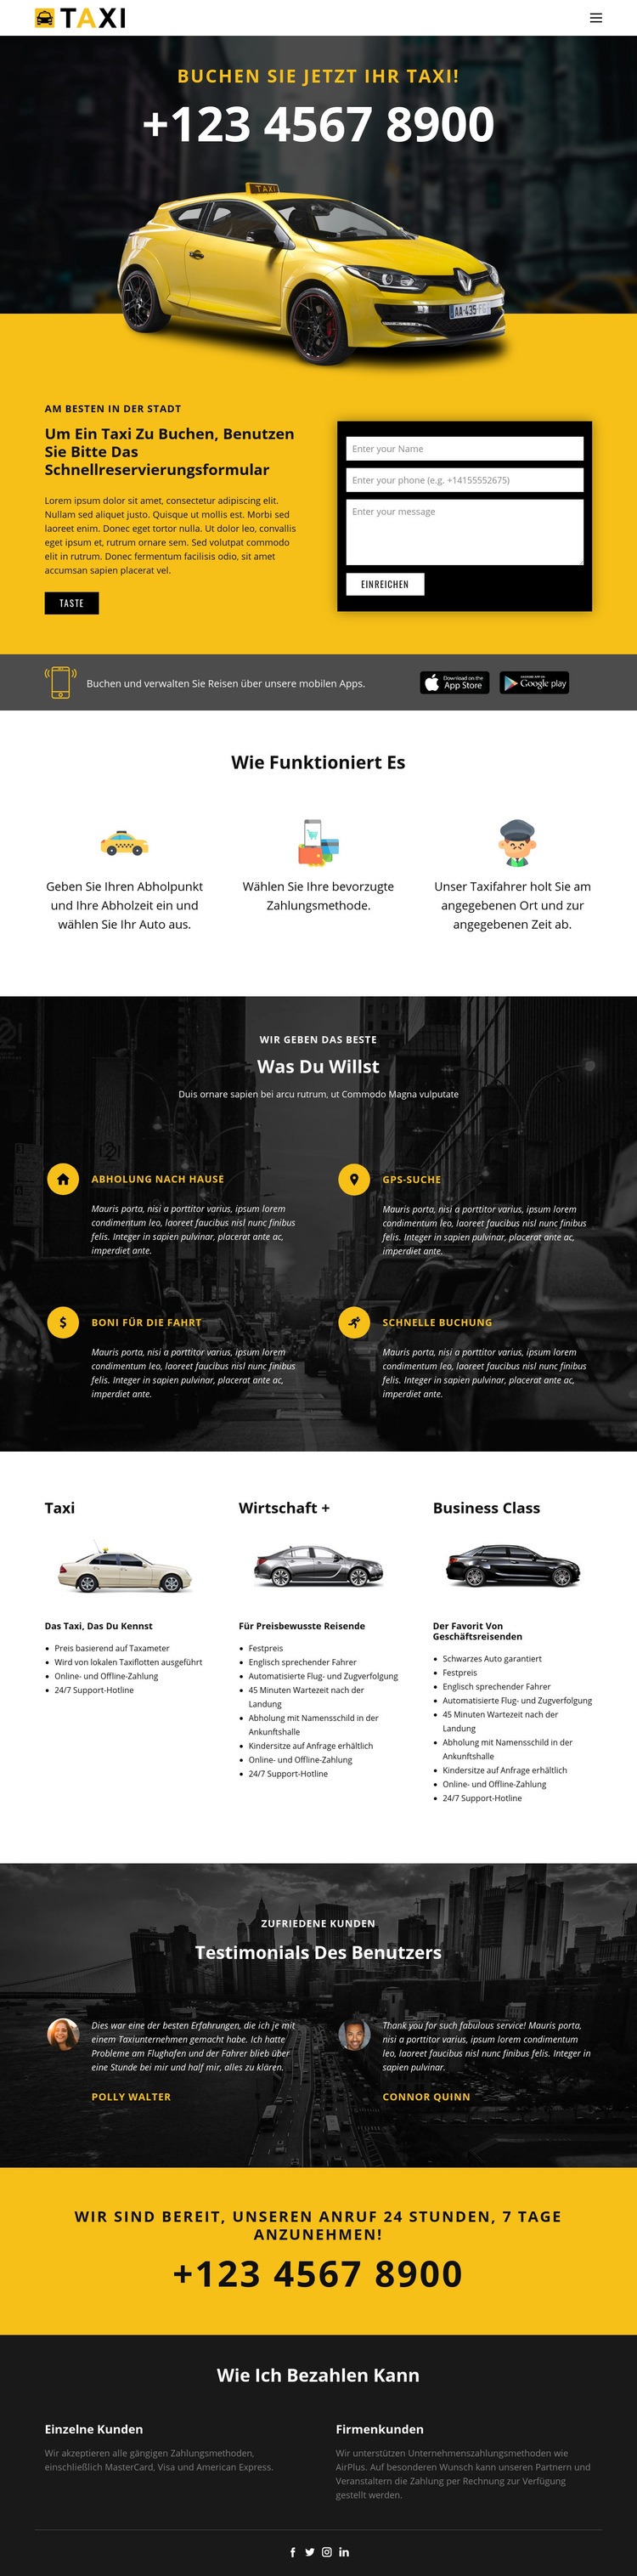 Schnellste Taxis HTML5-Vorlage